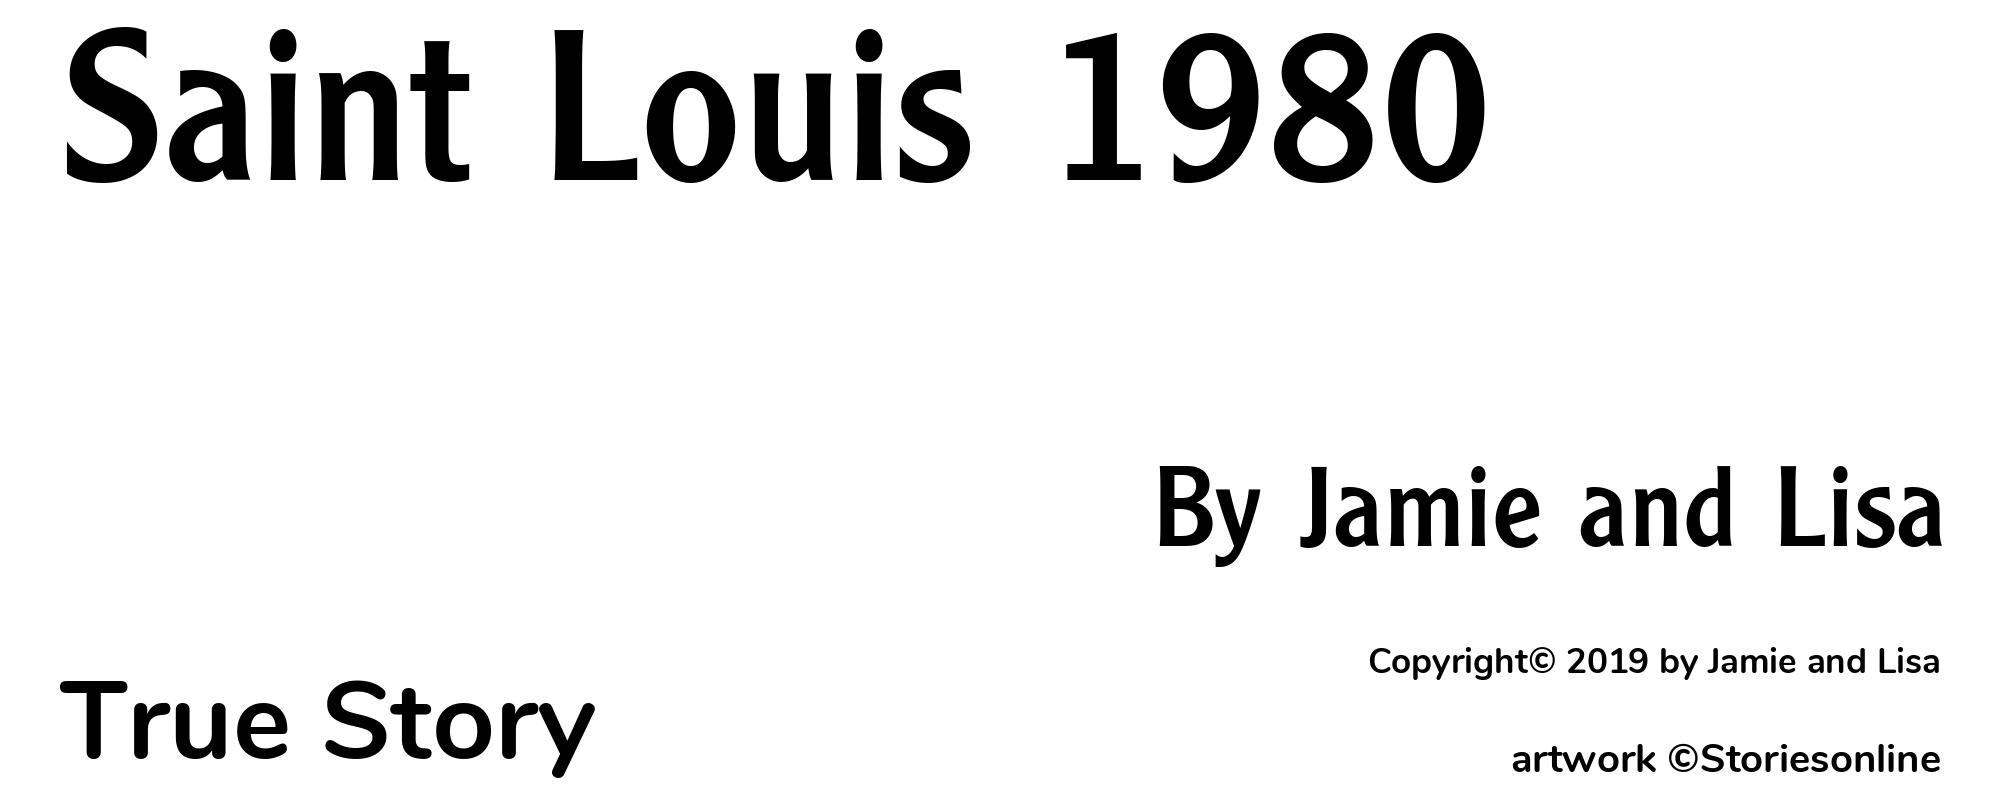 Saint Louis 1980 - Cover